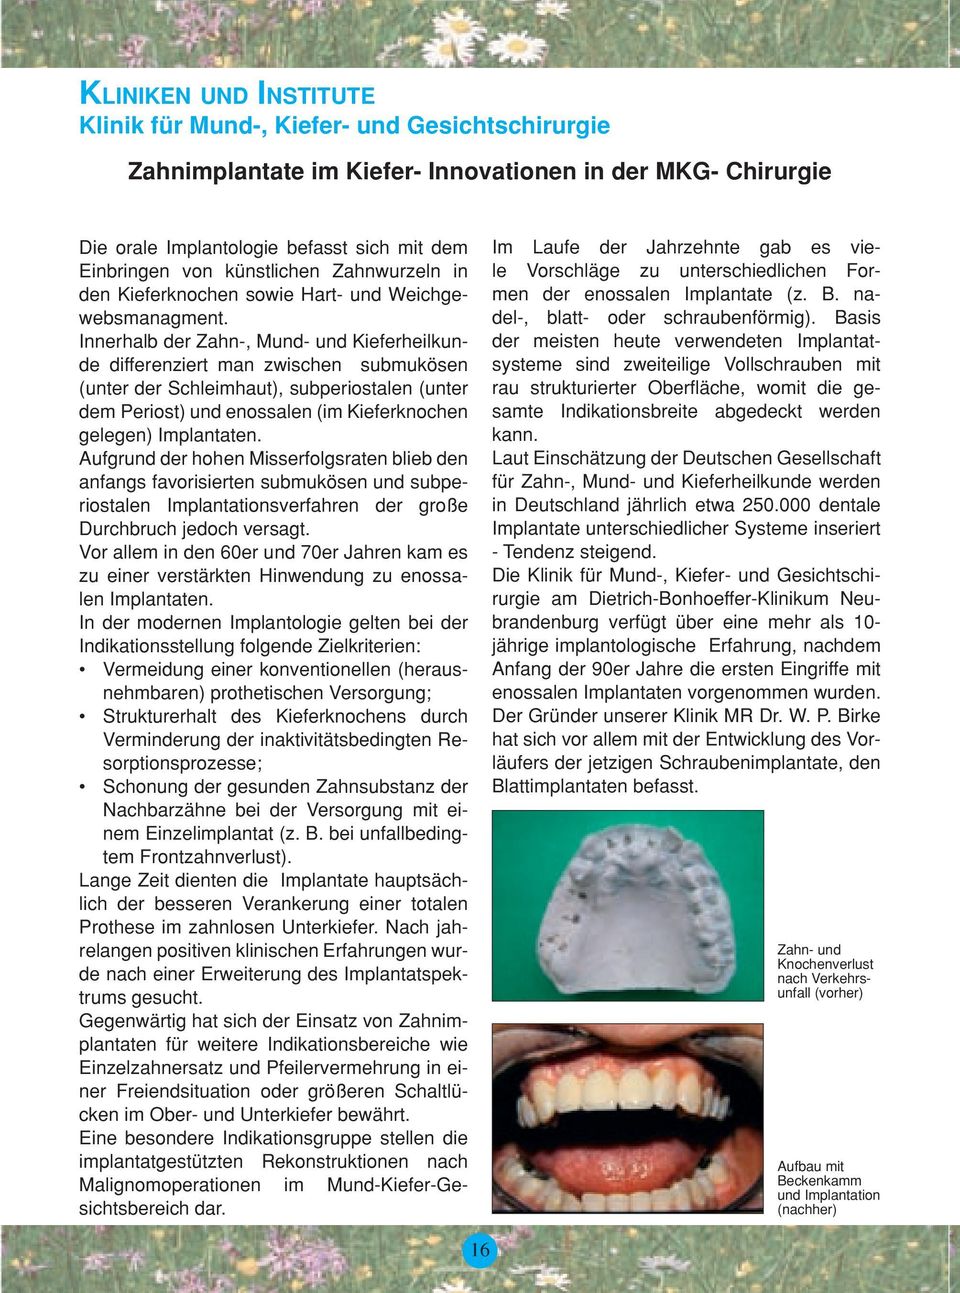 Innerhalb der Zahn-, Mund- und Kieferheilkunde differenziert man zwischen submukösen (unter der Schleimhaut), subperiostalen (unter dem Periost) und enossalen (im Kieferknochen gelegen) Implantaten.